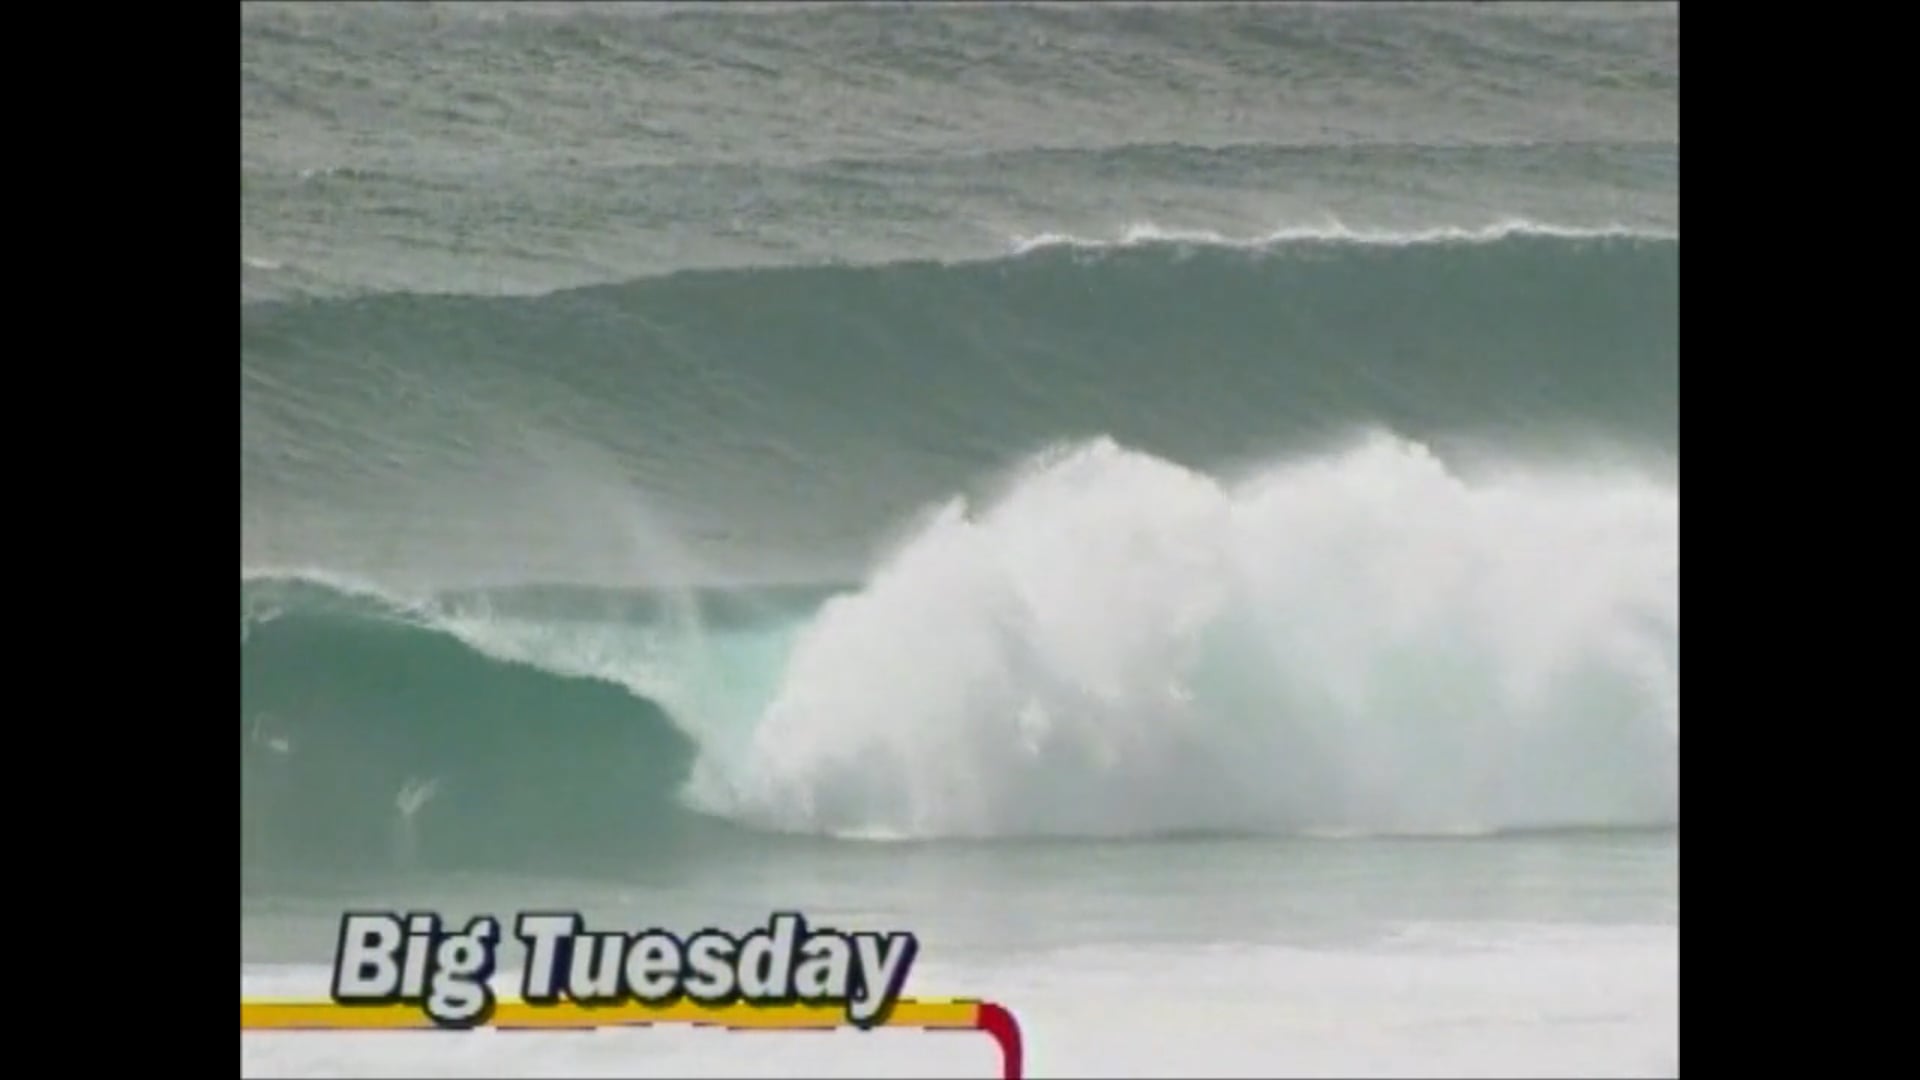 Surfing History: Big Tuesday – 23rd Feb 1999